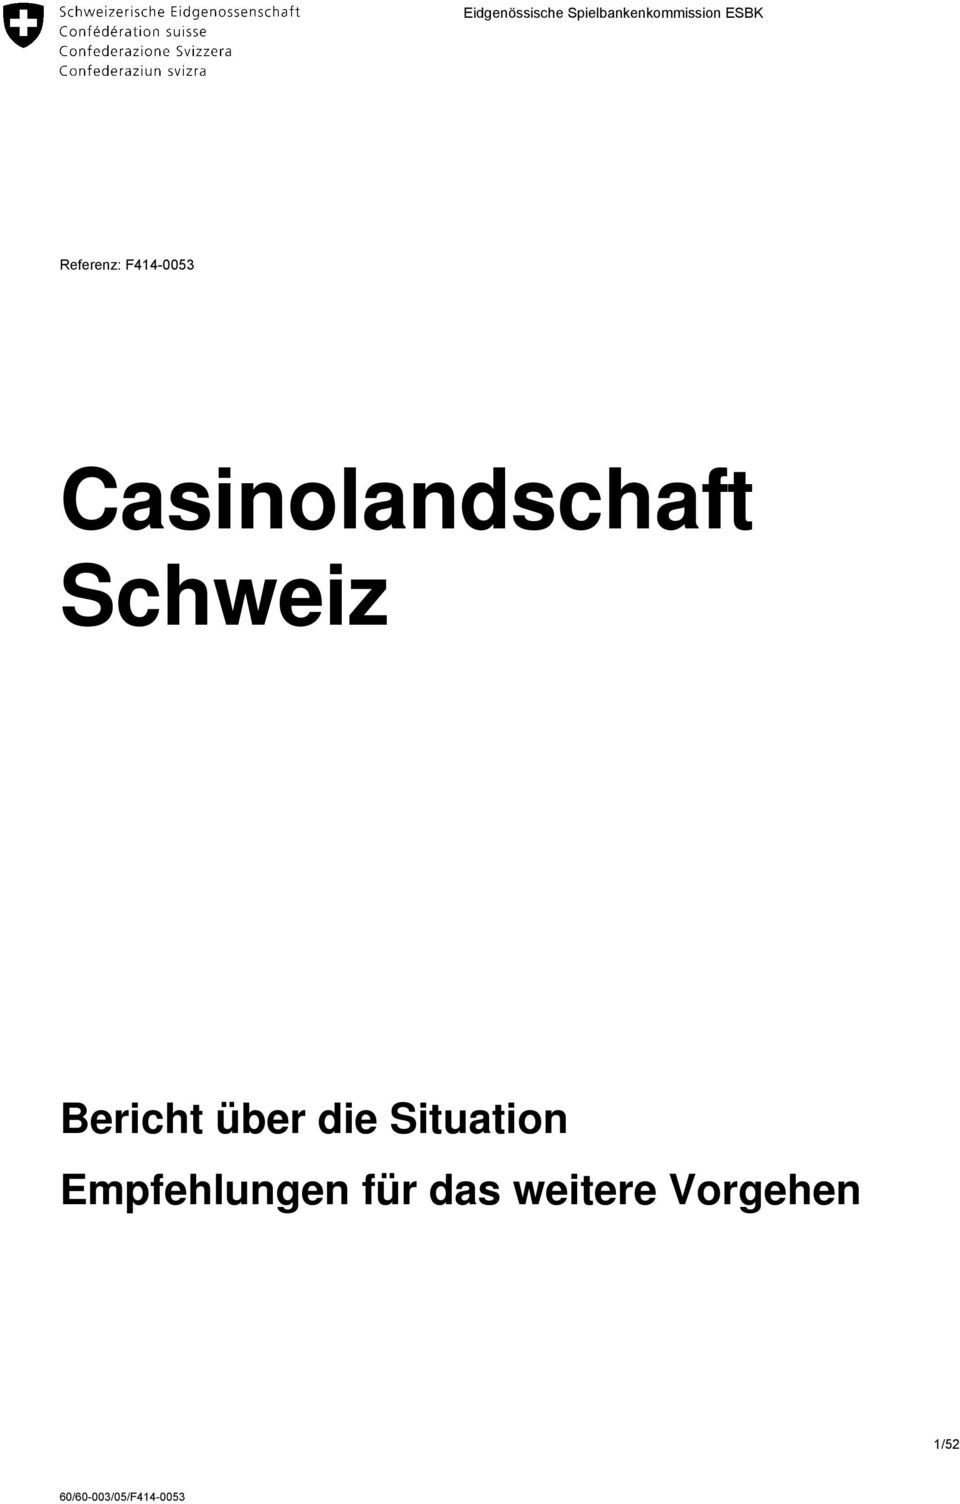 Casinolandschaft Schweiz Bericht über